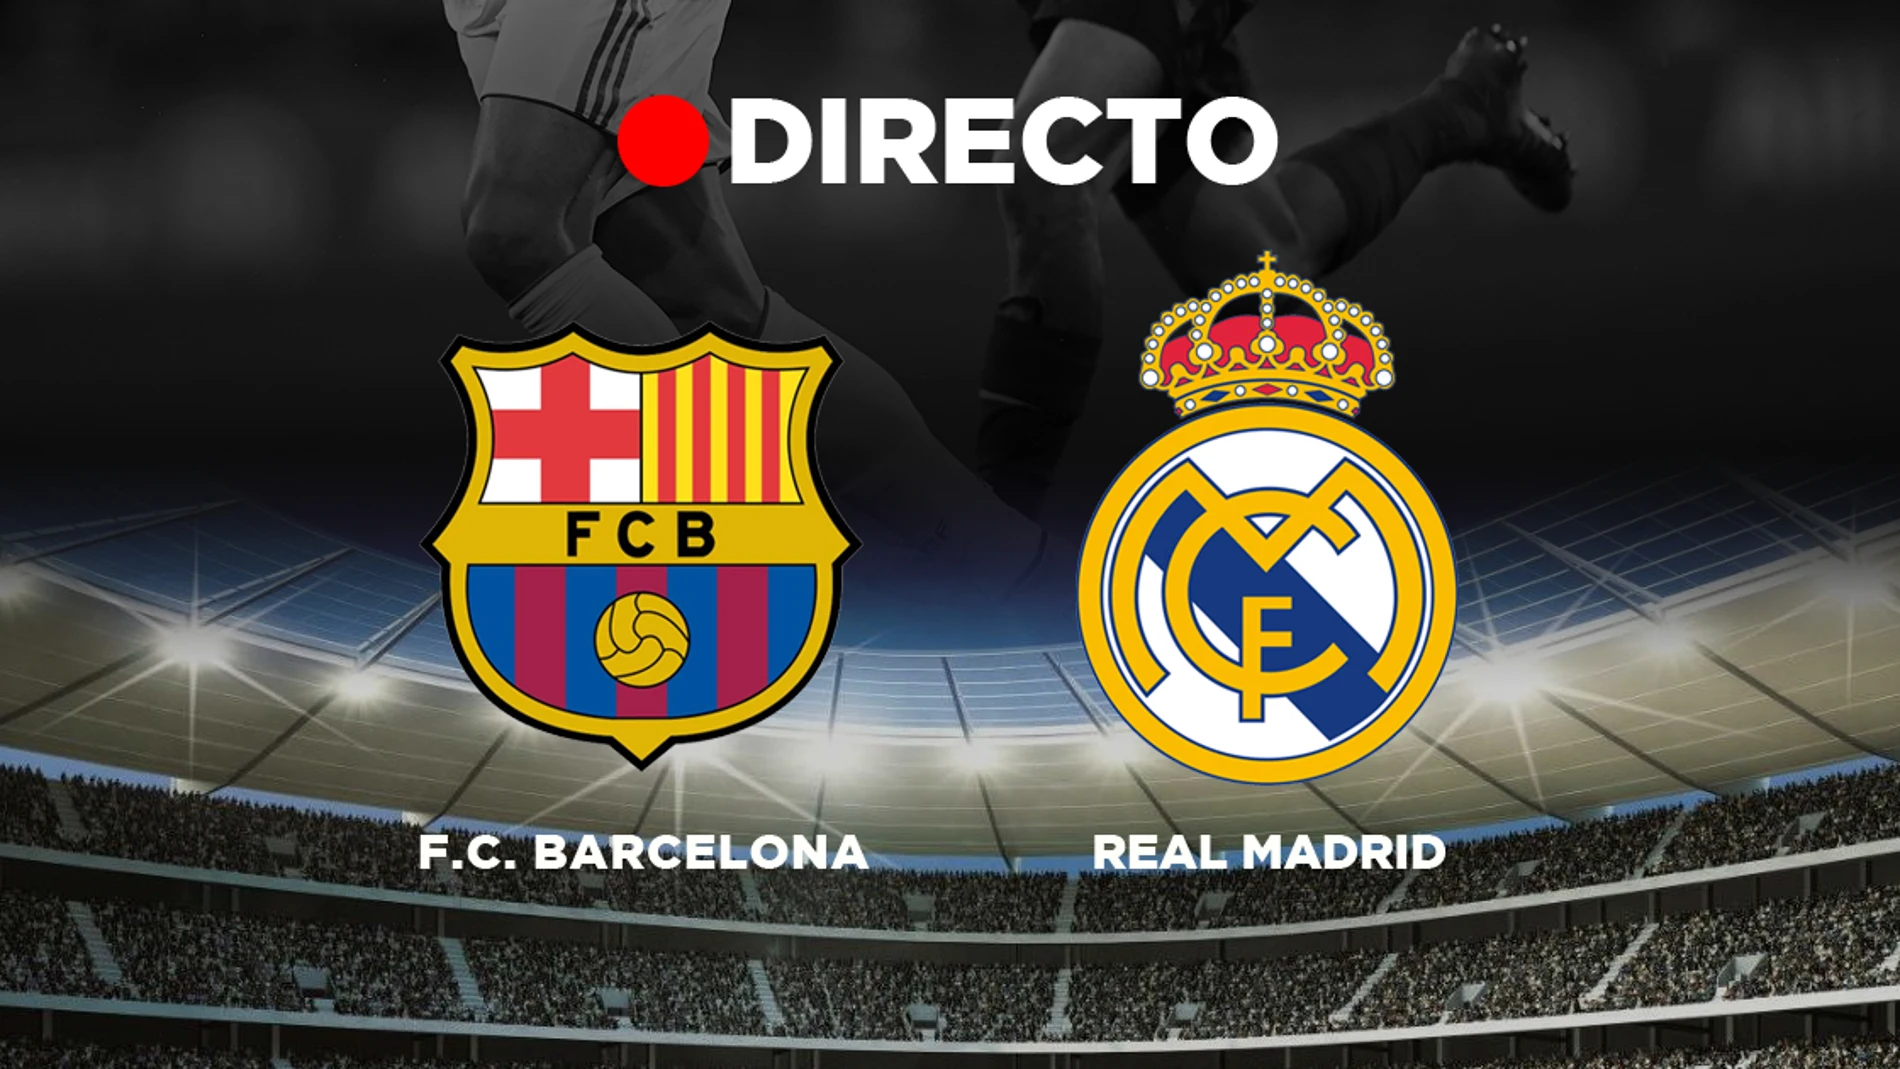 FC Barcelona - Real Madrid: Partido de fútbol de Liga, resultado, goles en directo